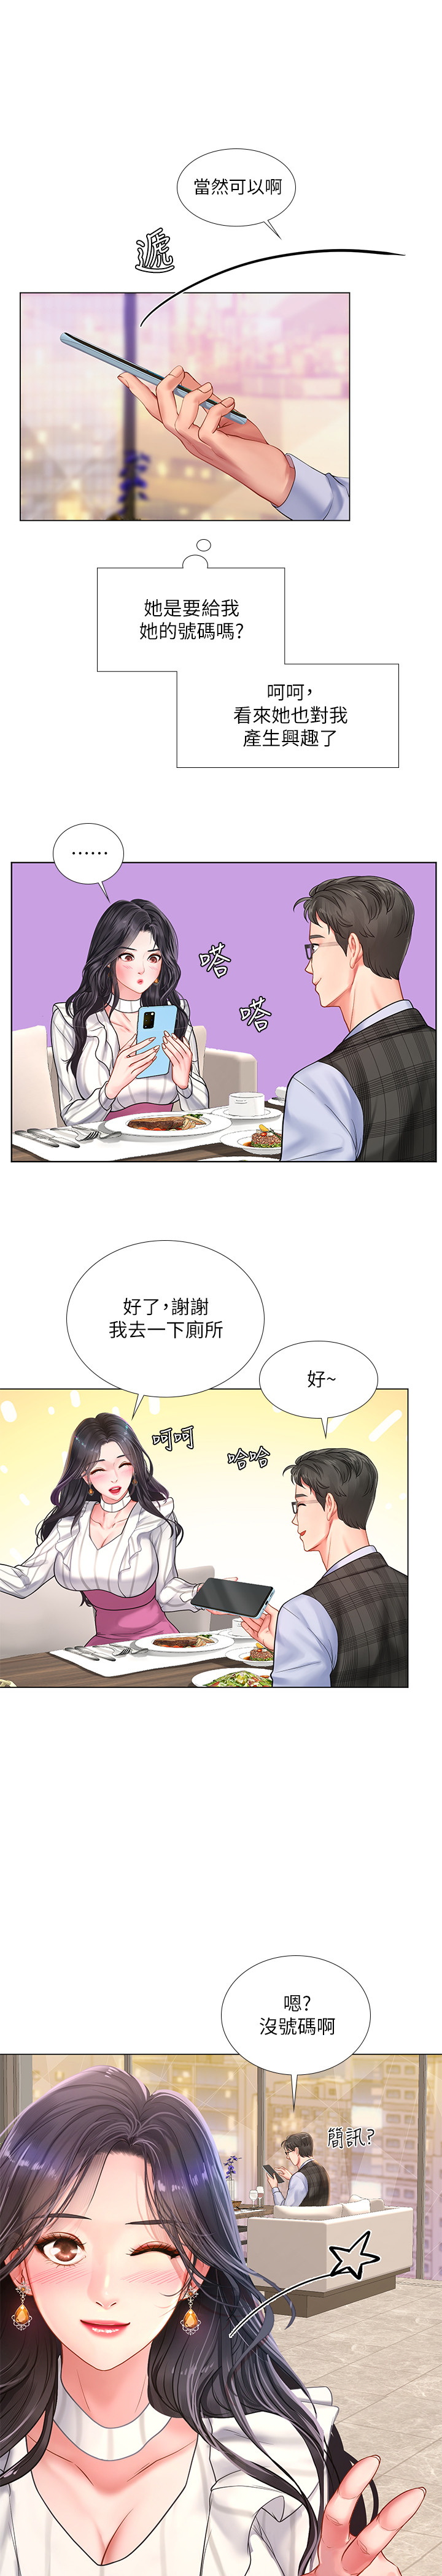 韩国污漫画 享樂補習街 第71话 23